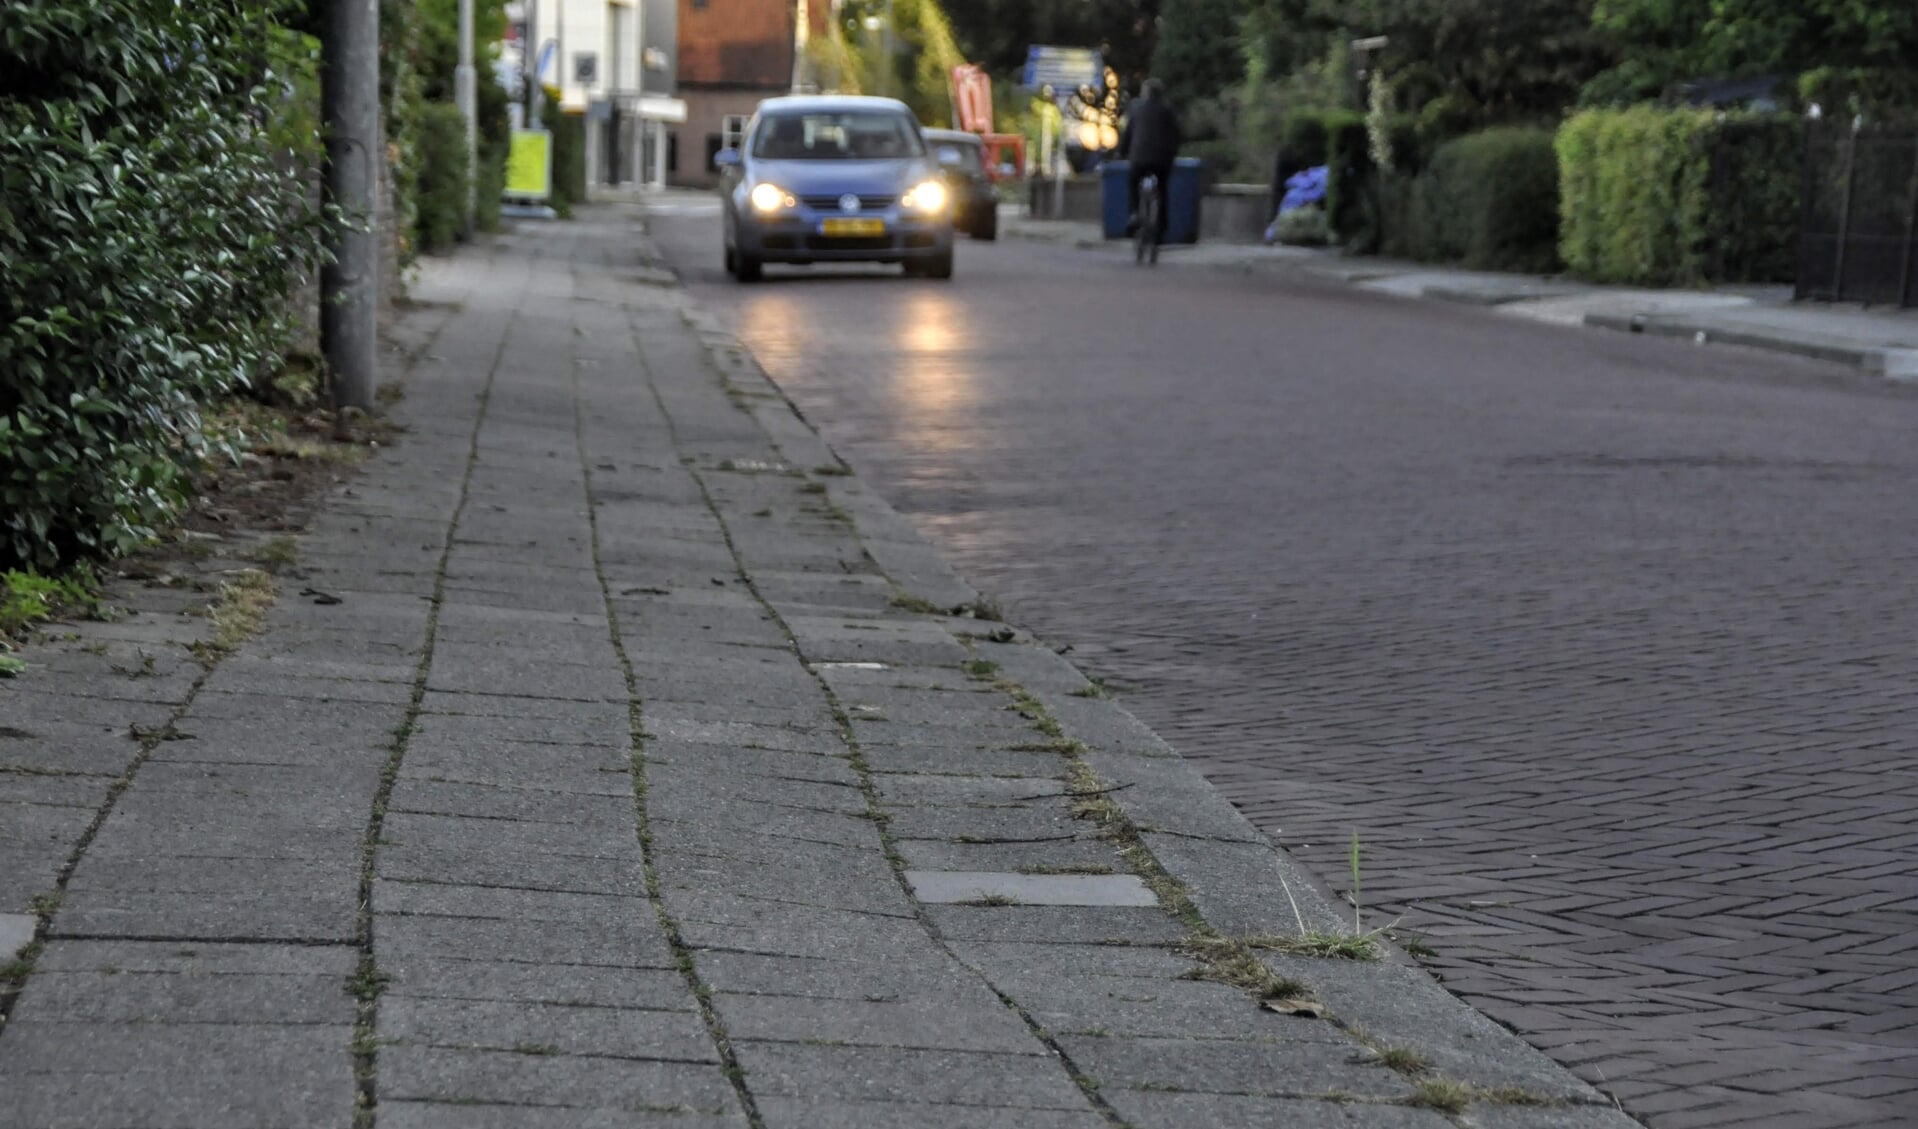 Op verschillende plekken in Barneveld zijn stoepen en klinkerwegen verzakt, zoals op deze archieffoto te zien aan de Amersfoortsestraat.